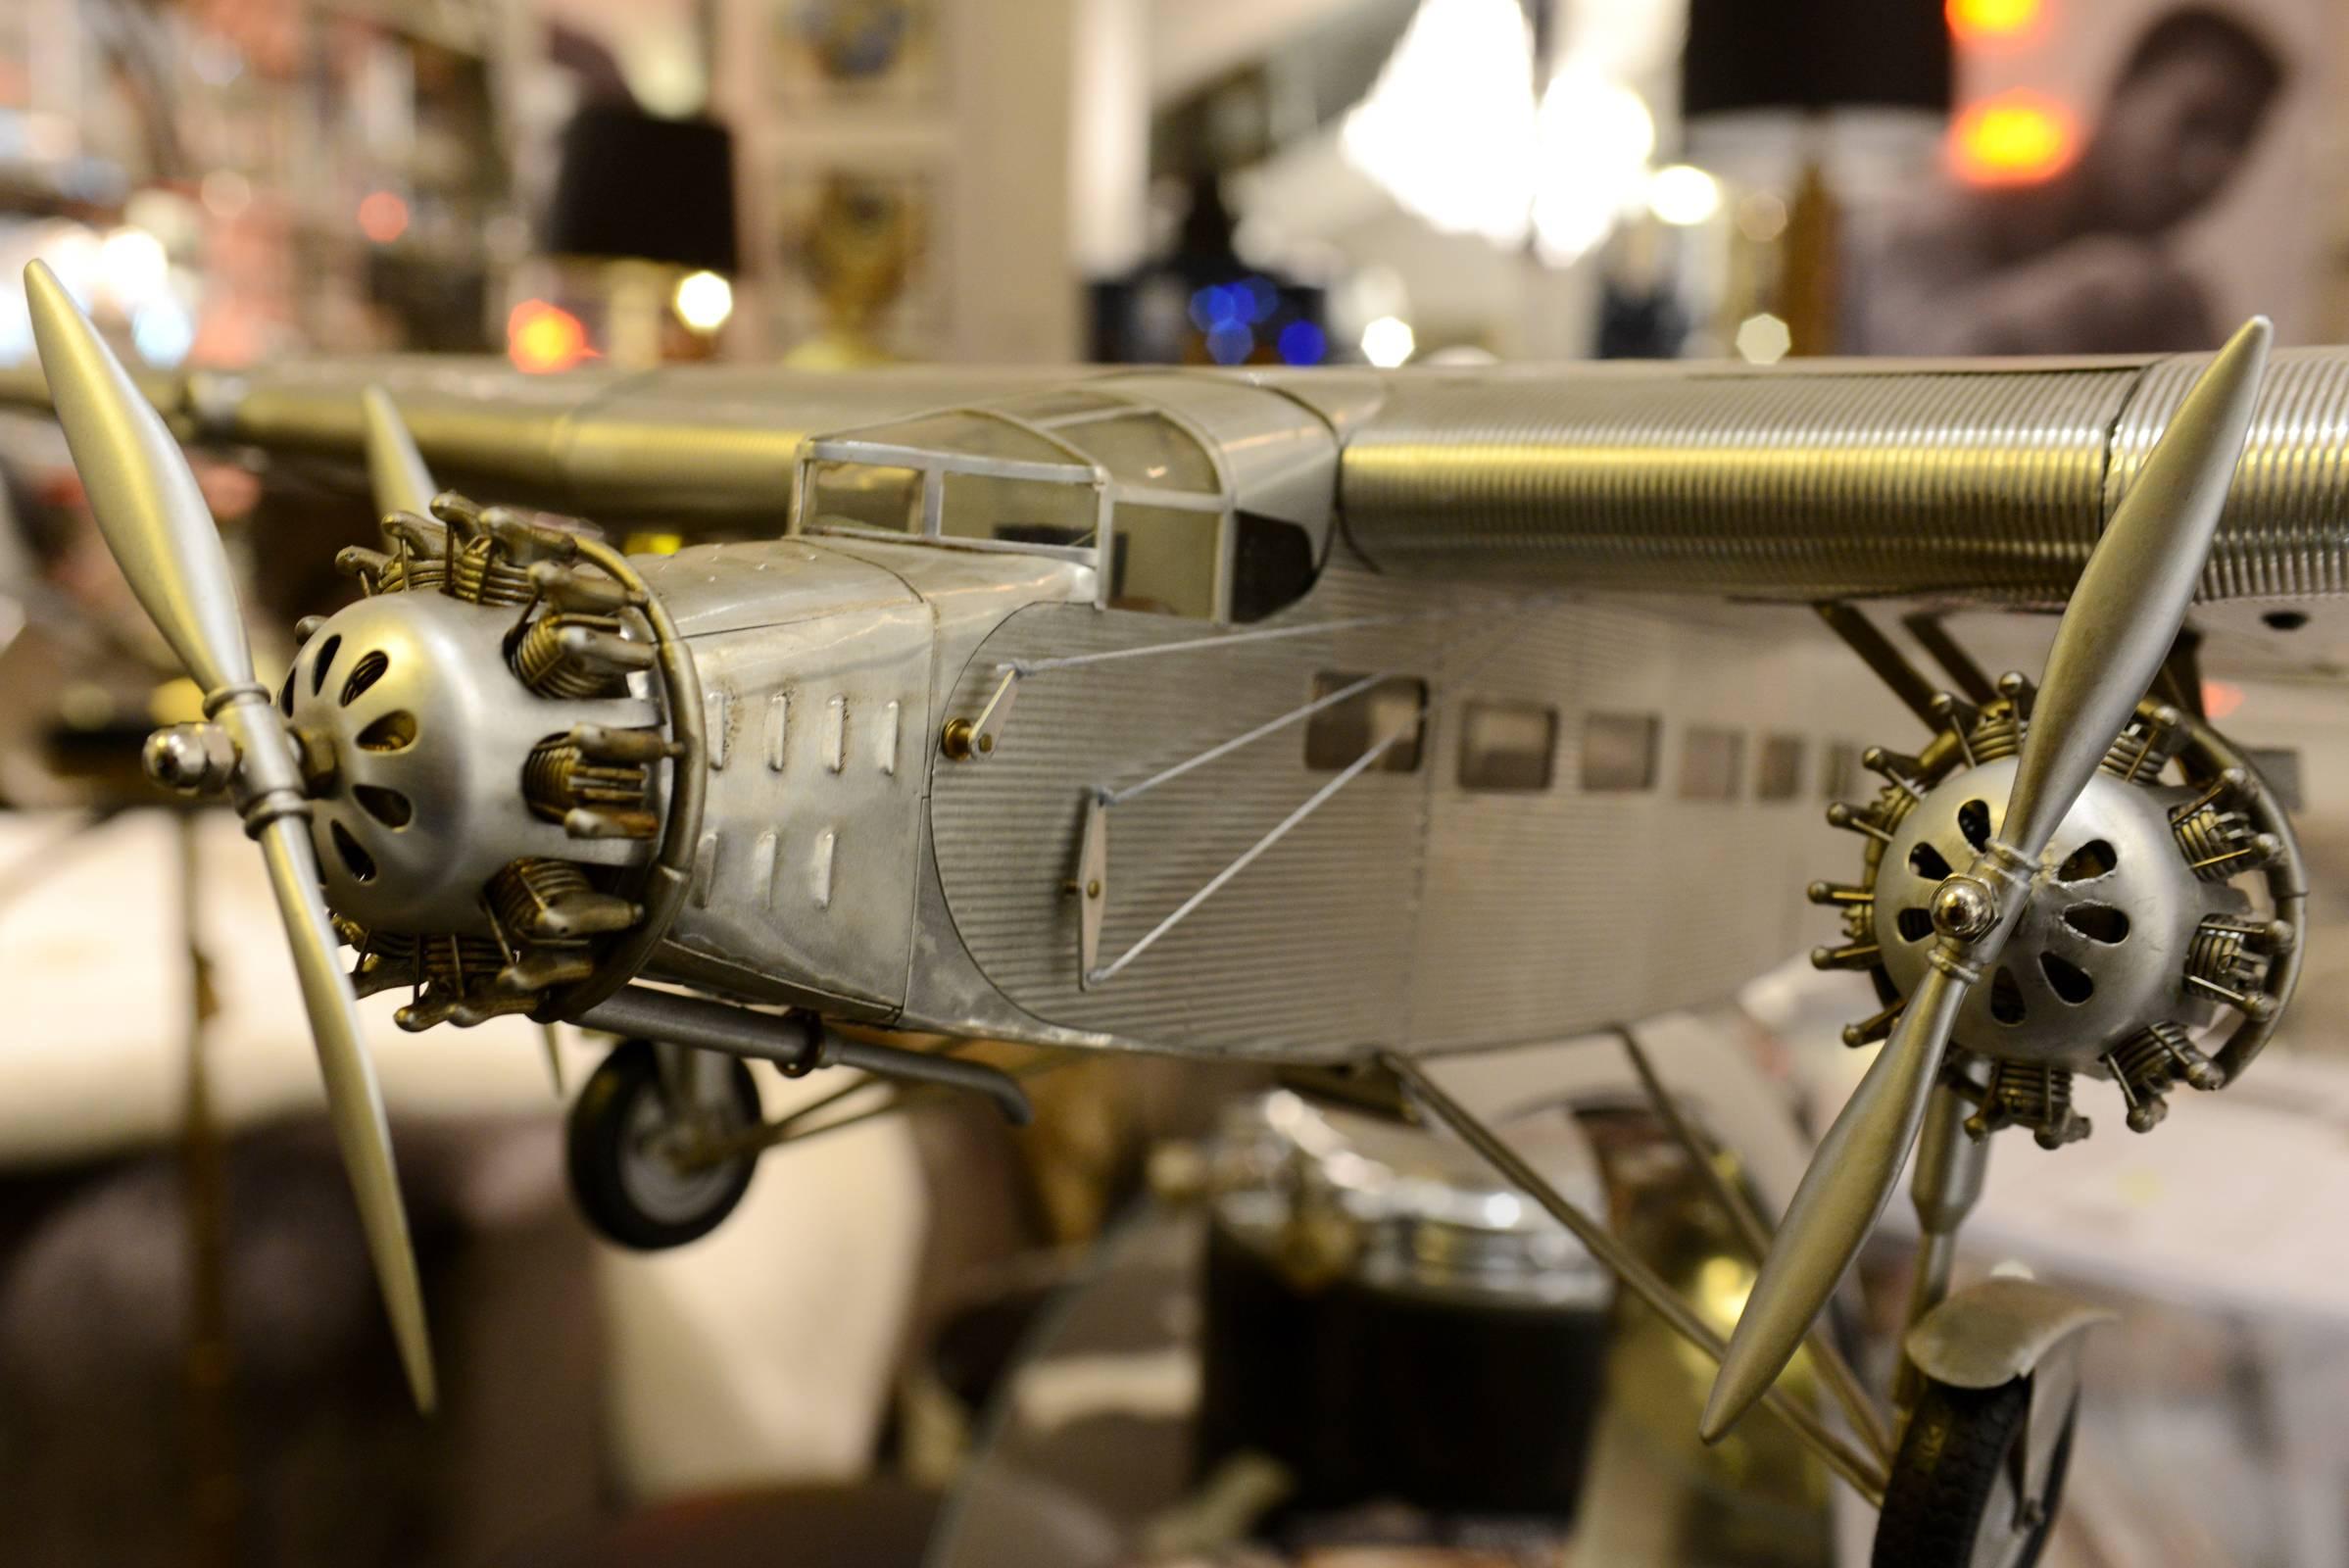 Modèle réduit d'avion trimoteur Ford fabriqué à la main en aluminium.
Fabriqué entre 1926 et 1933 par la société Ford 
usine. Envergure des ailes : 102cm.
